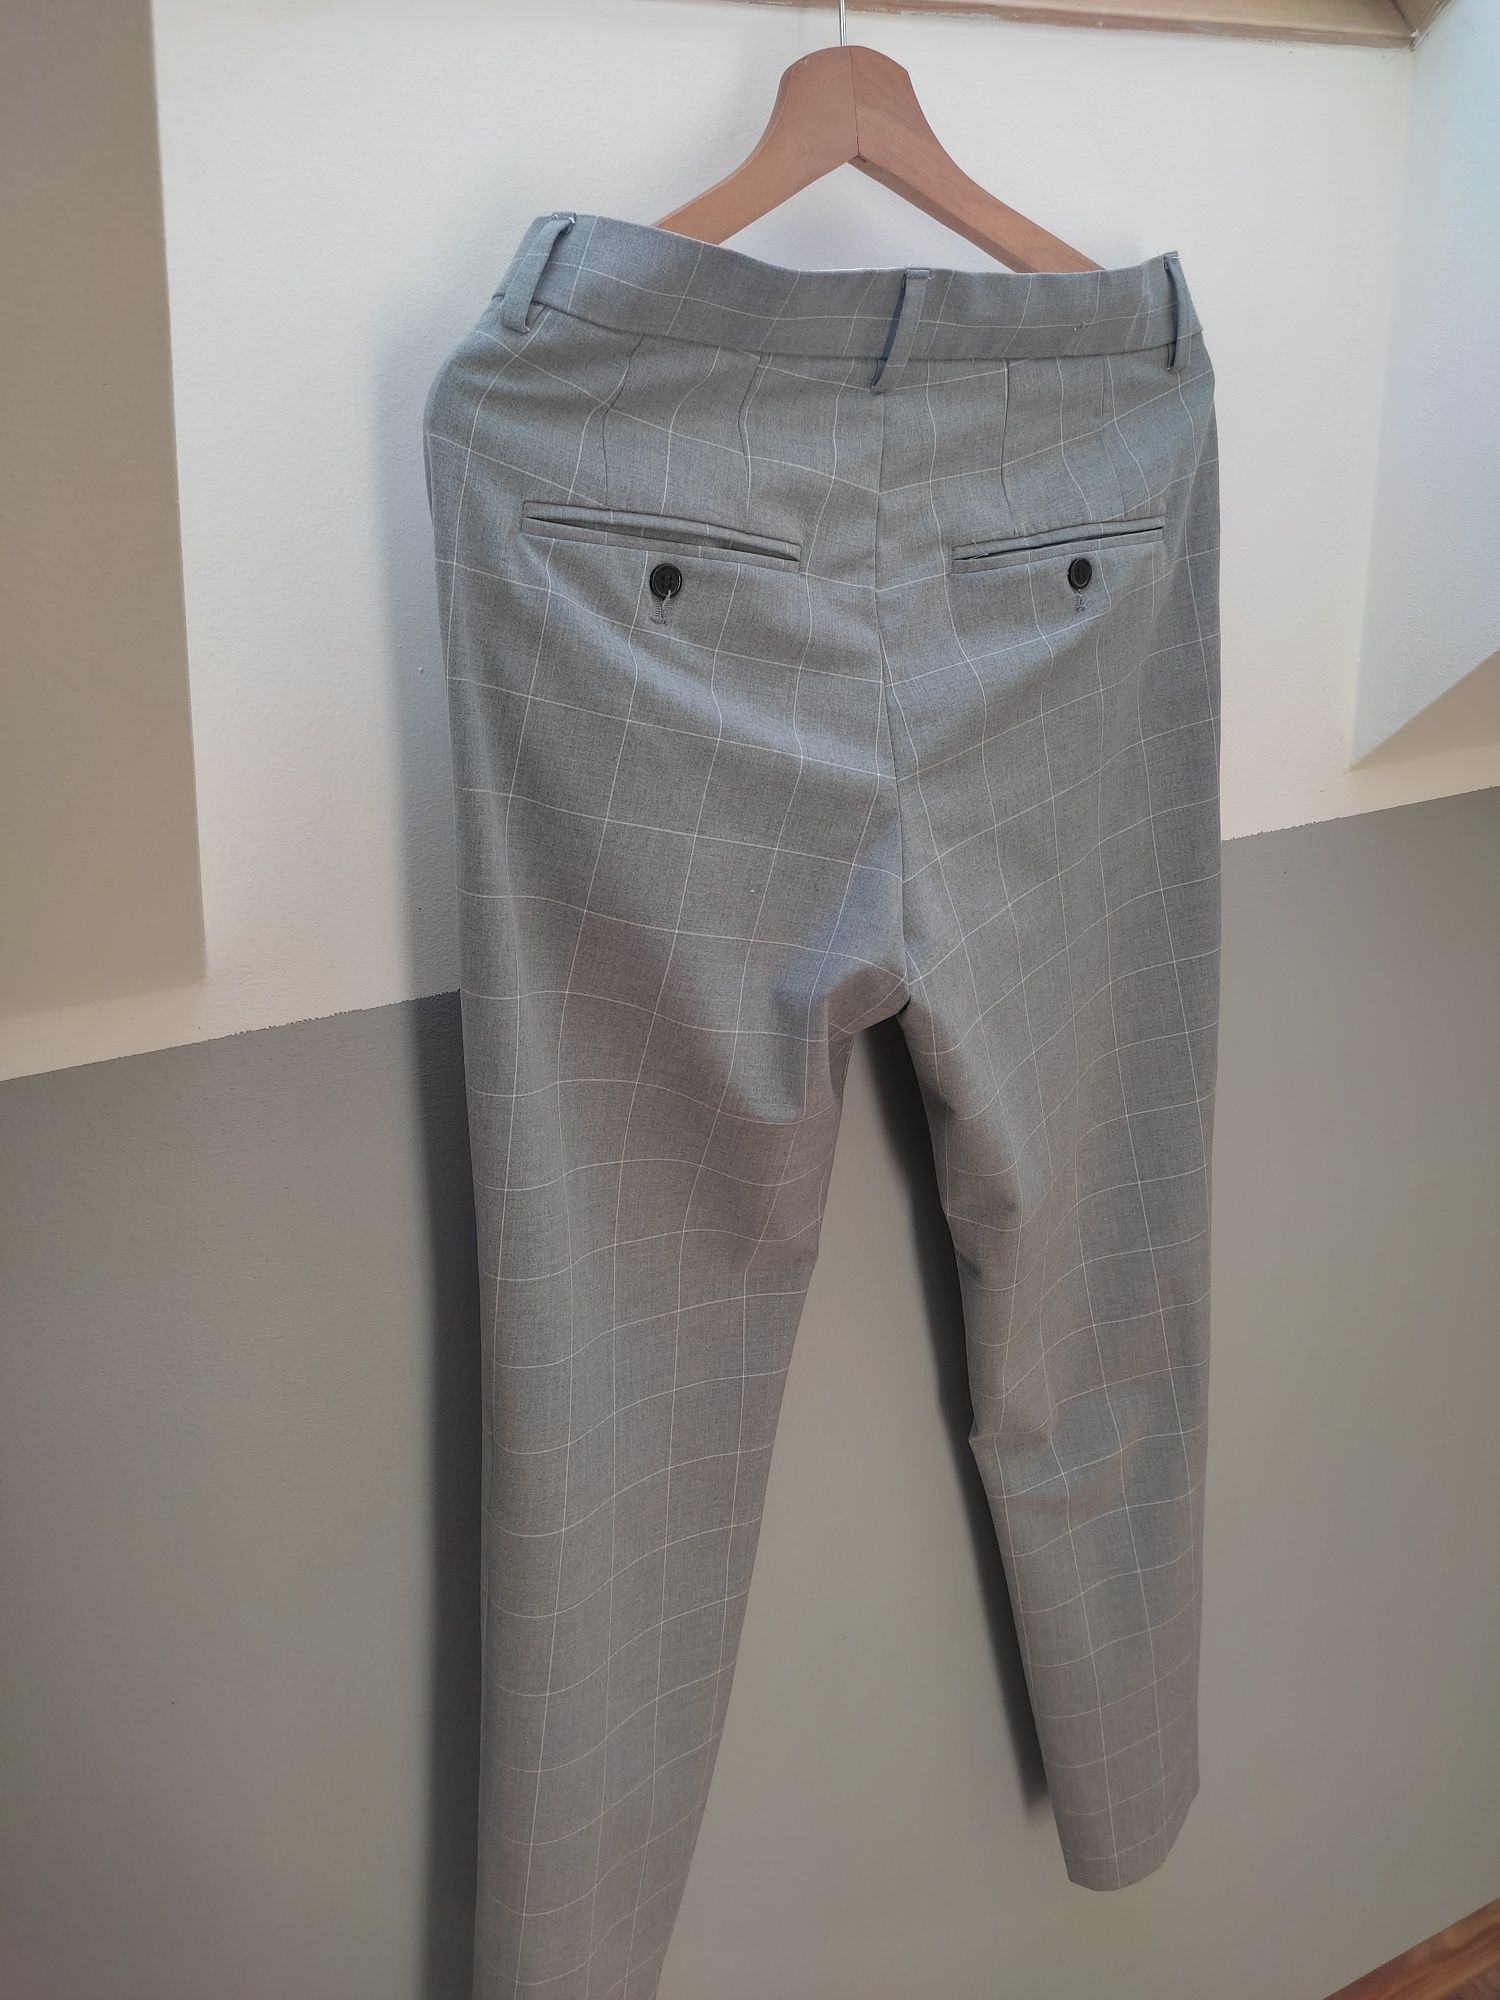 Spodnie męskie garniturowe szare H&M rozmiar 30